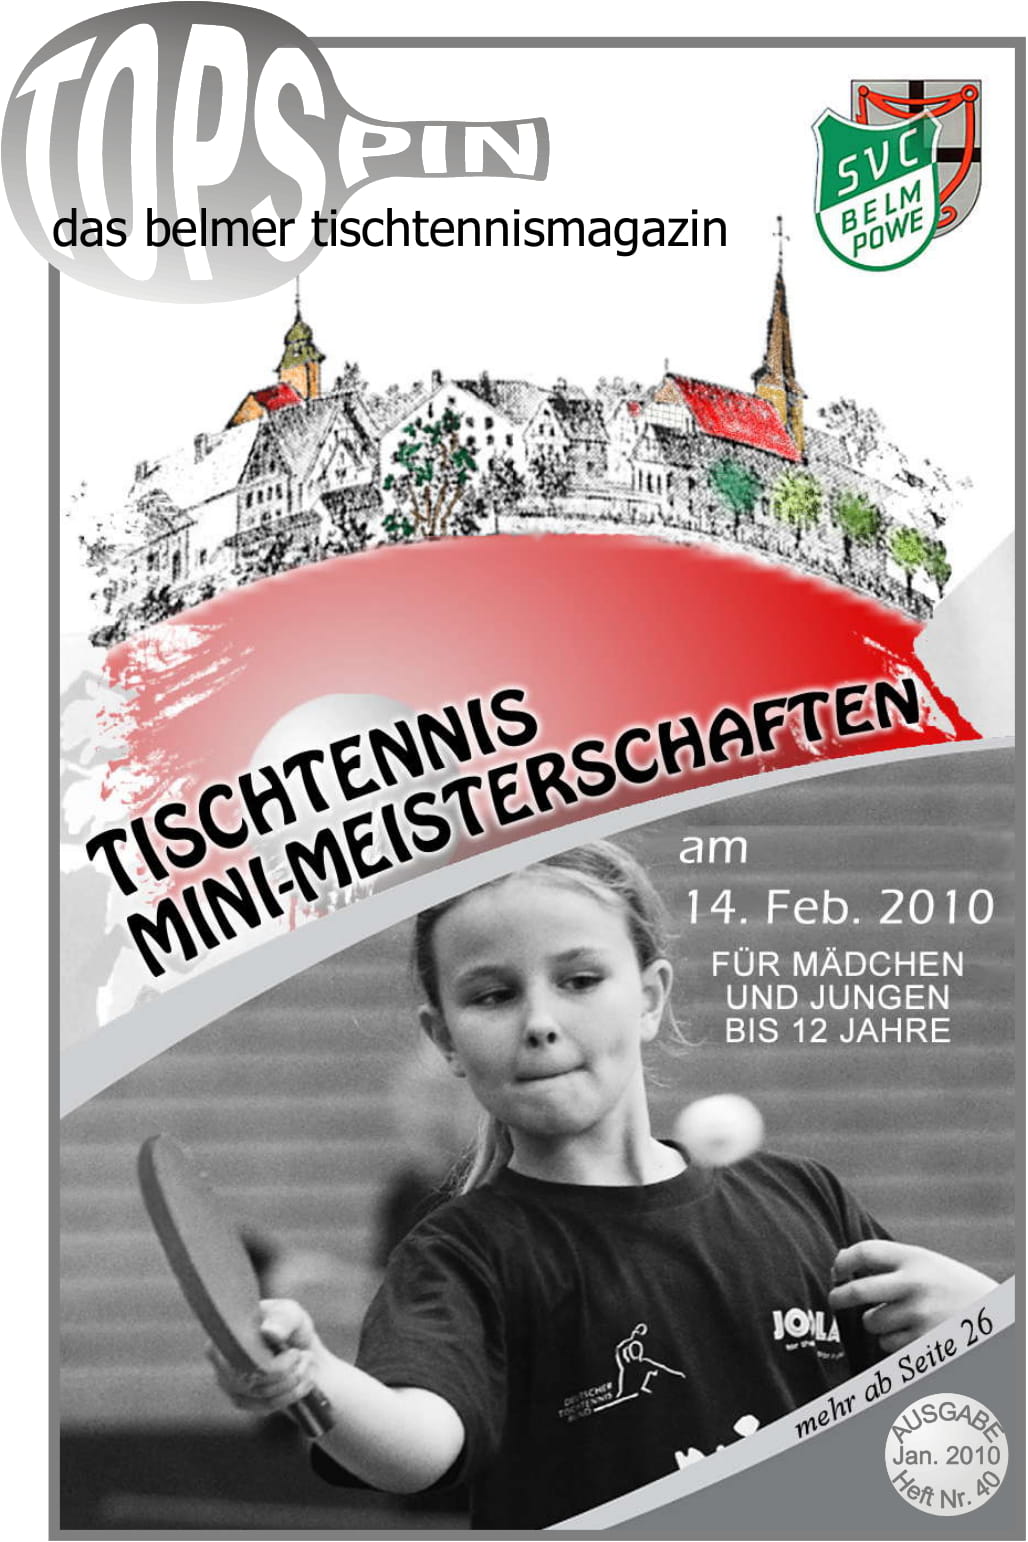 Tischtennis-Punktspielbetrieb in Niedersachsen wird ab 1. März fortgesetzt